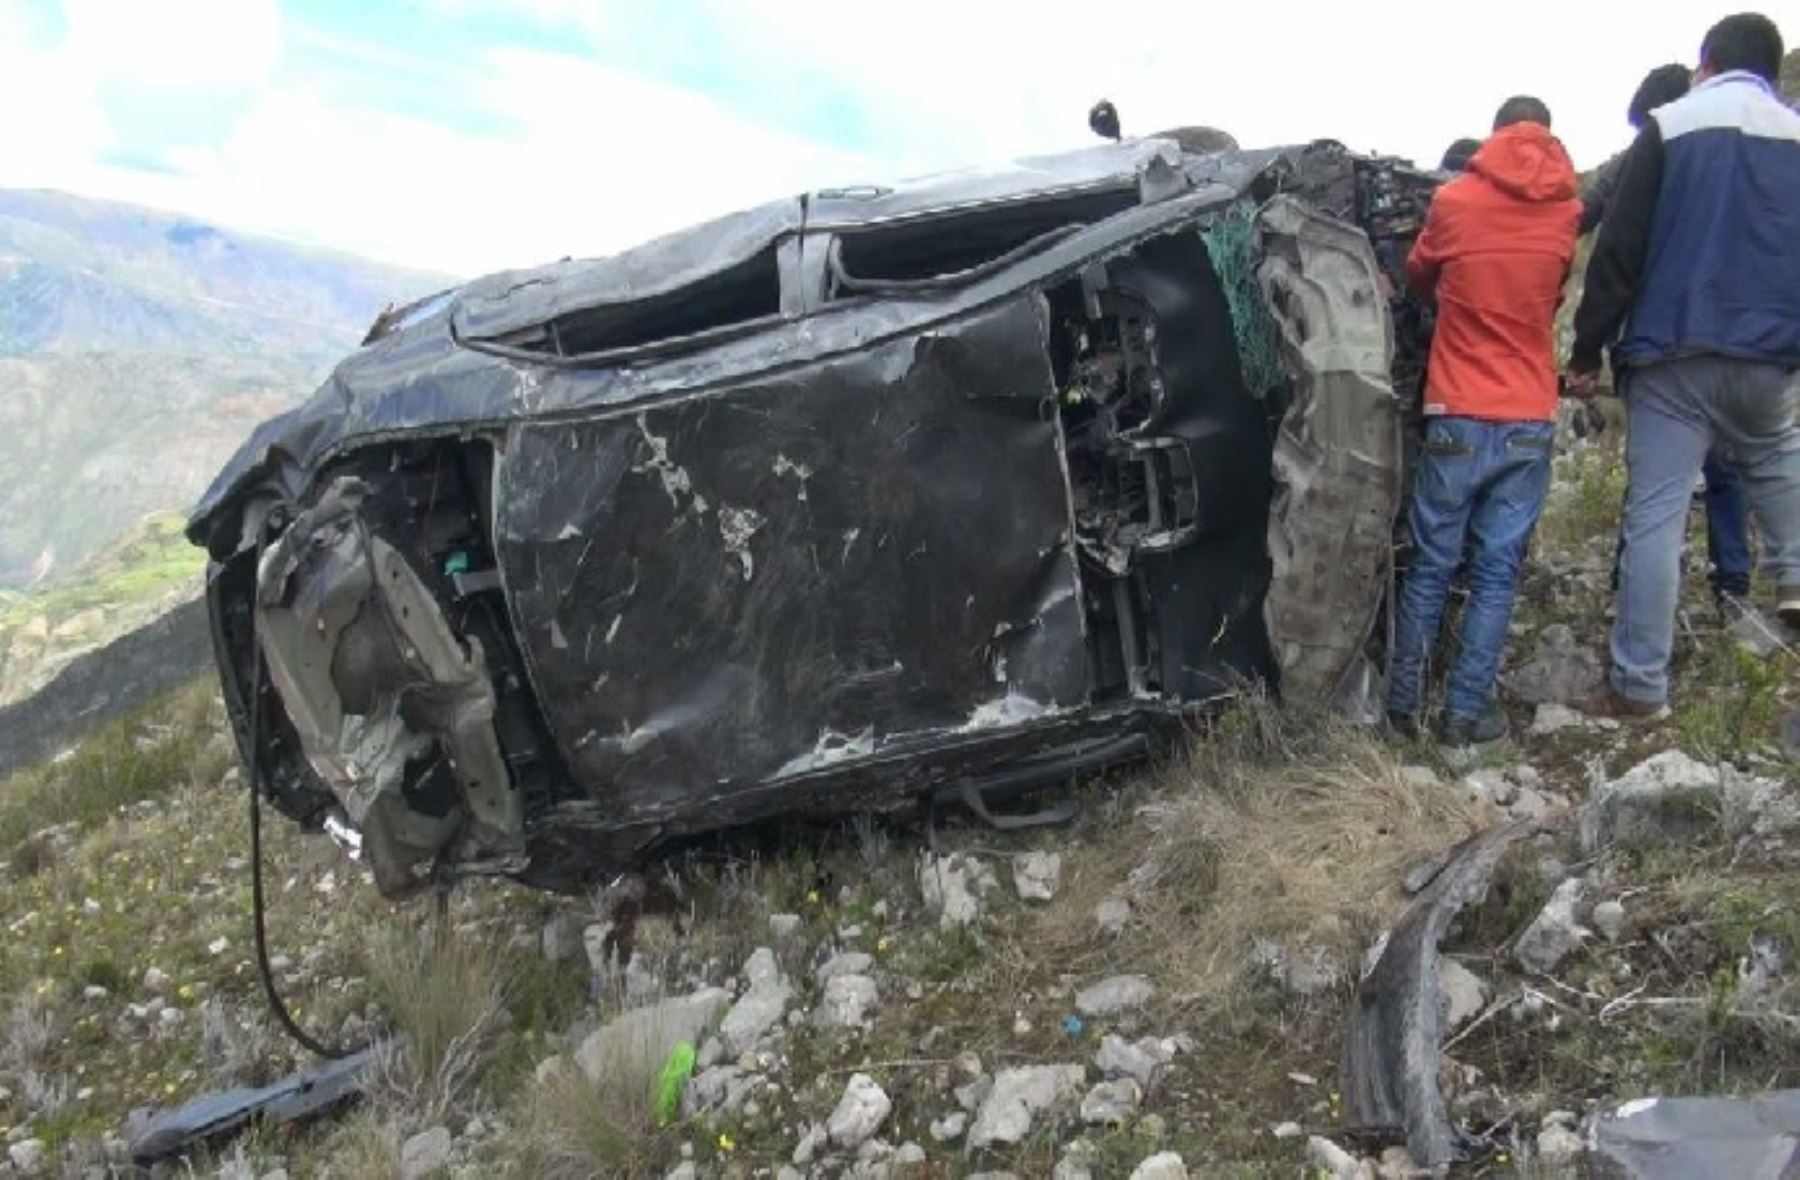 Tres personas, entre ellos un bebé y una adolescente, murieron al despistarse y volcar la camioneta en la que viajaban hacia un abismo de más de 300 metros de profundidad, en la carretera que une Huancayo (Junín) con el distrito de Moya, en la provincia y región Huancavelica.